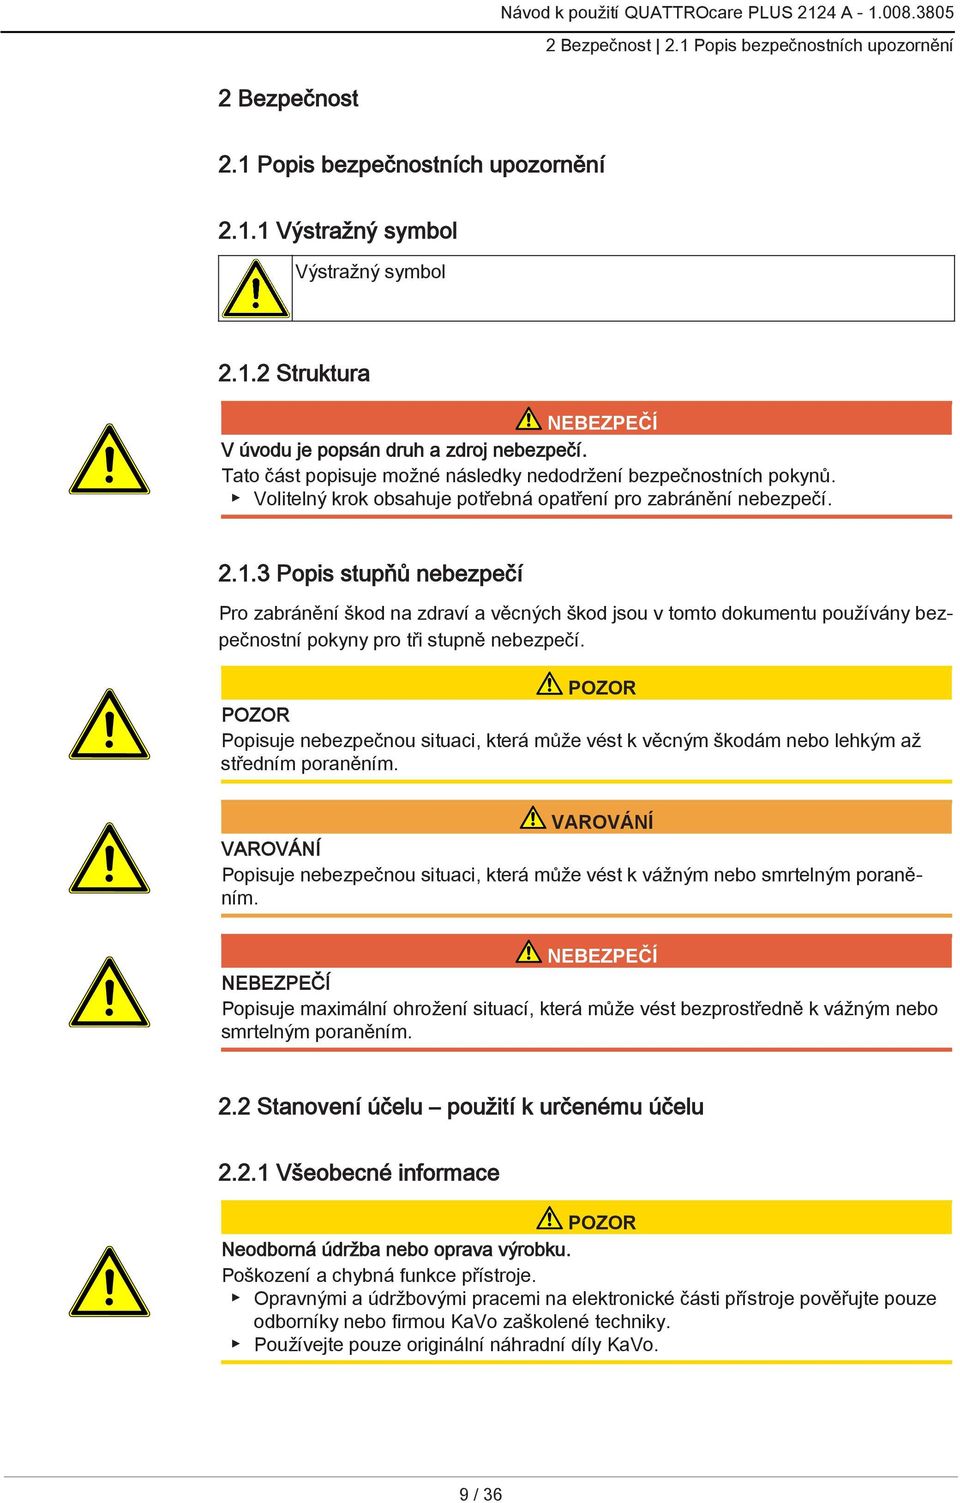 3 Popis stupňů nebezpečí Pro zabránění škod na zdraví a věcných škod jsou v tomto dokumentu používány bezpečnostní pokyny pro tři stupně nebezpečí.